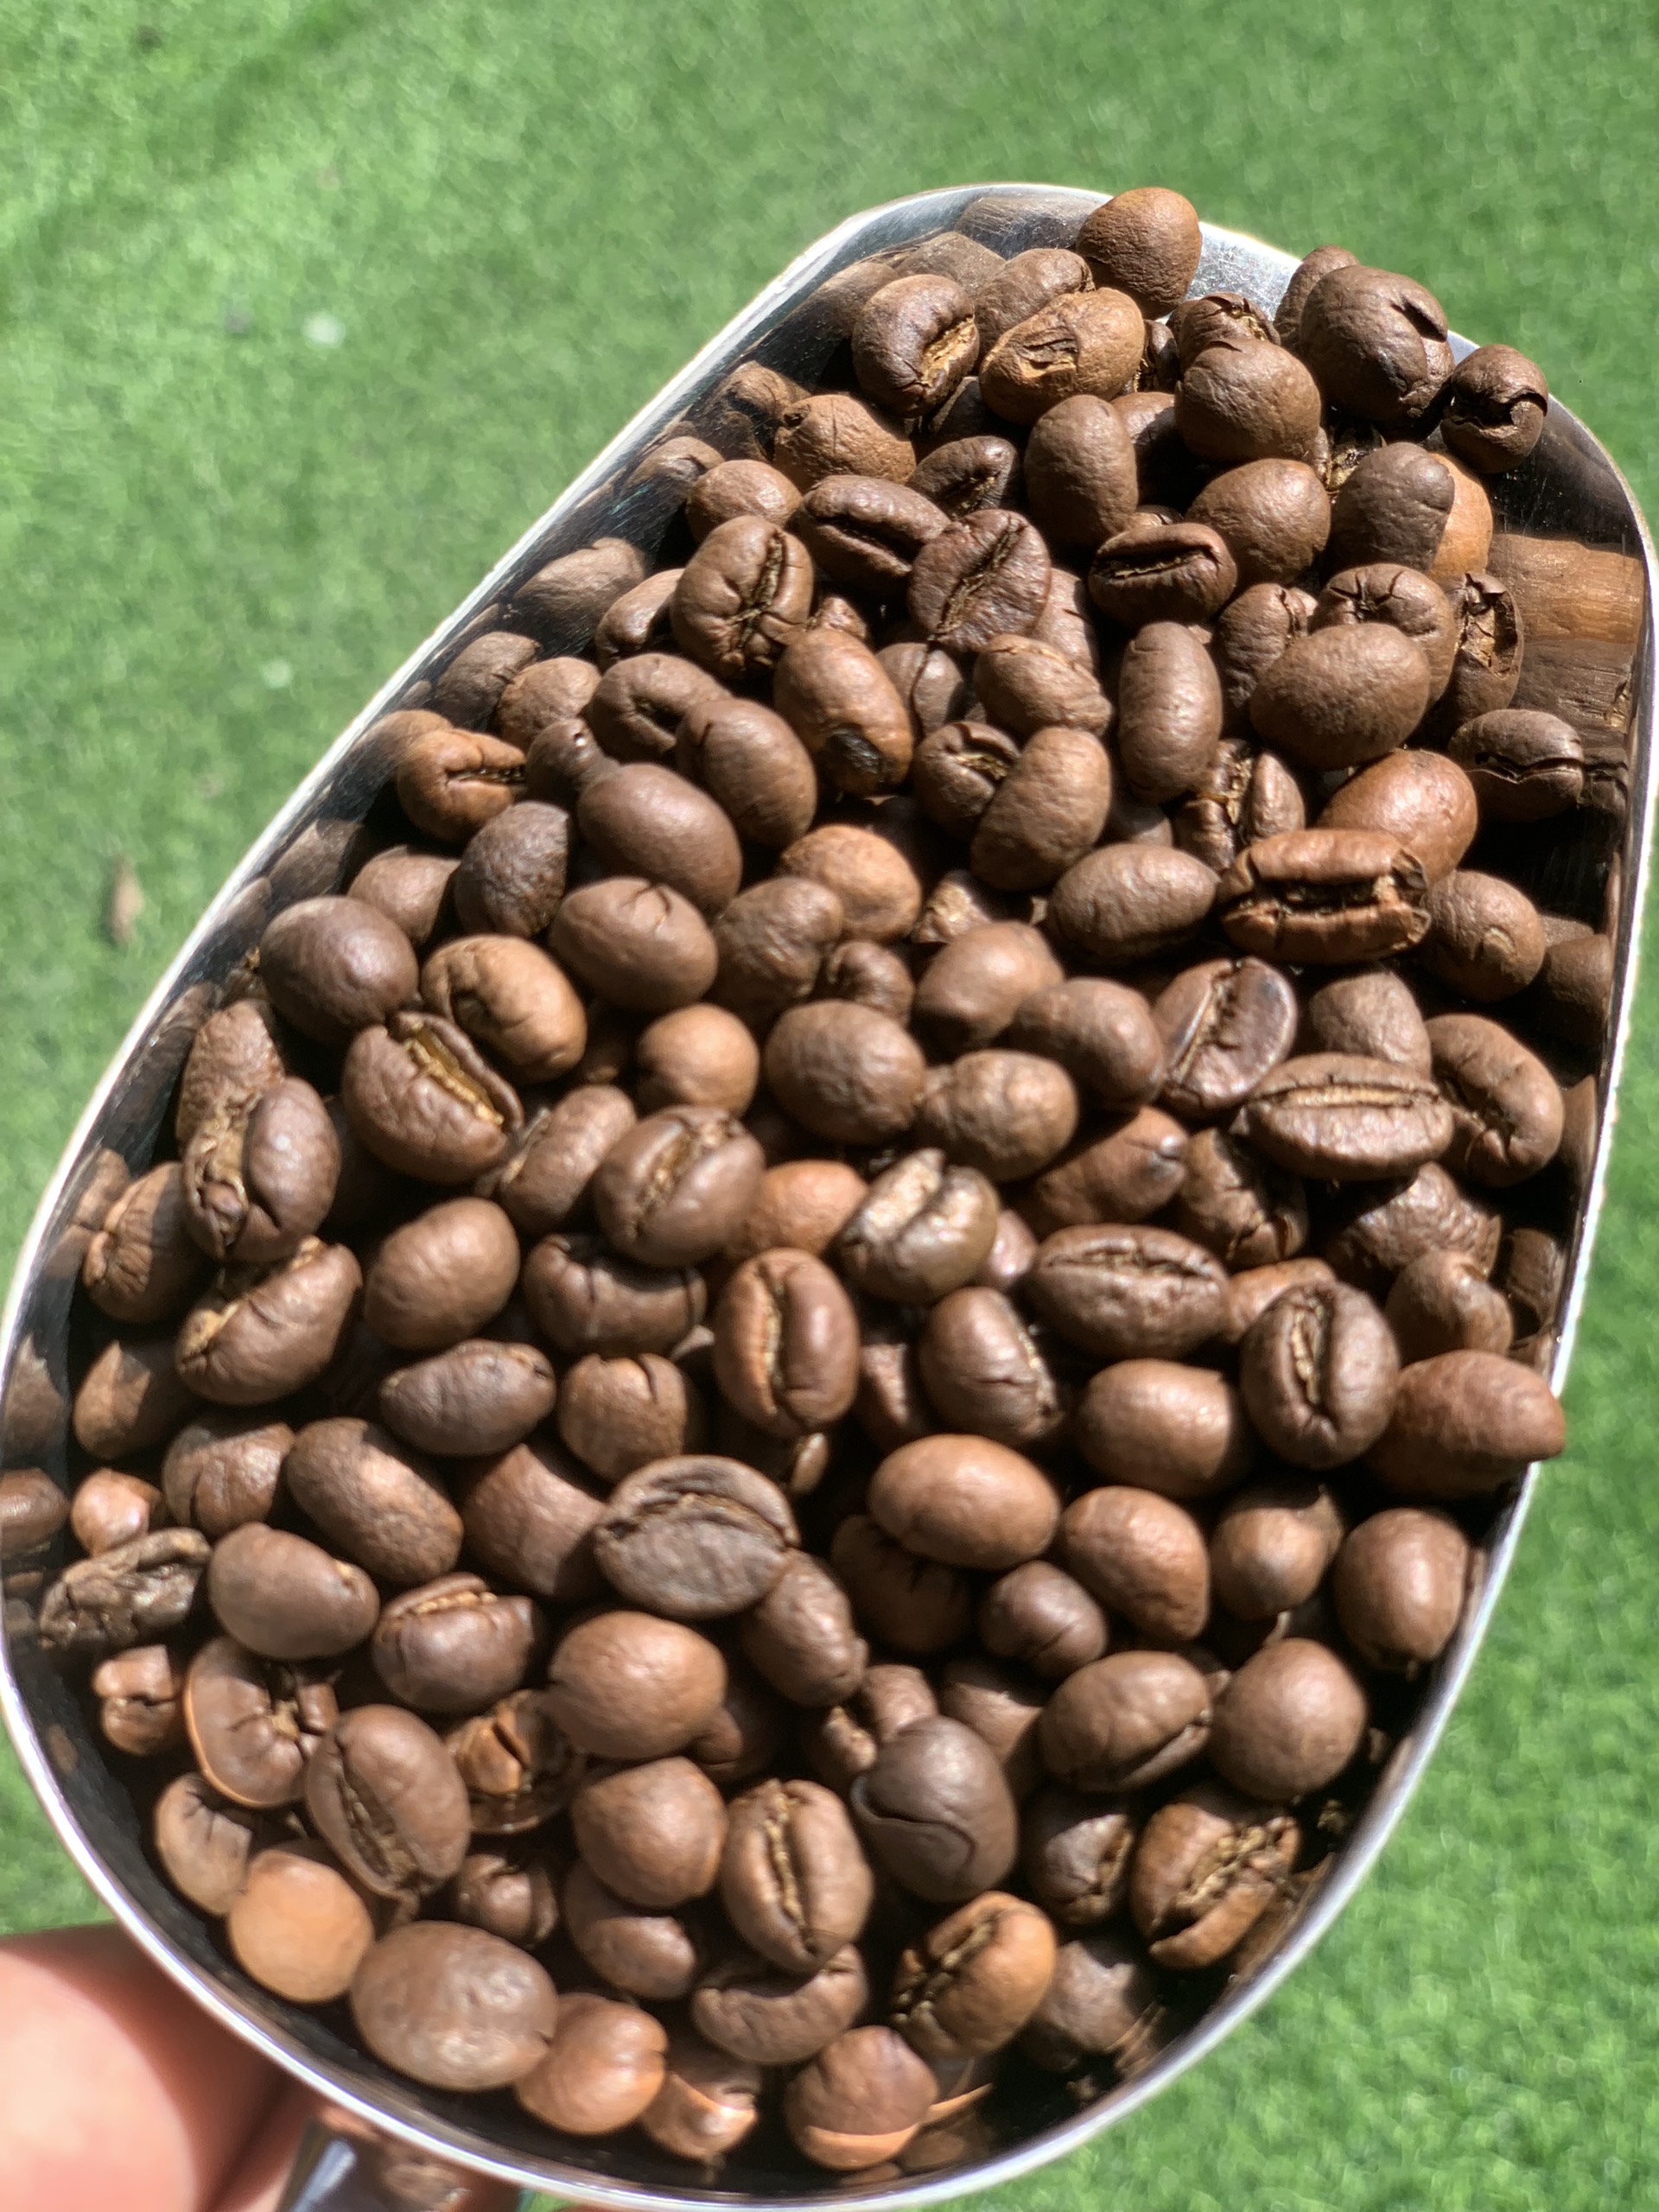 Cà phê Arabica là gì?